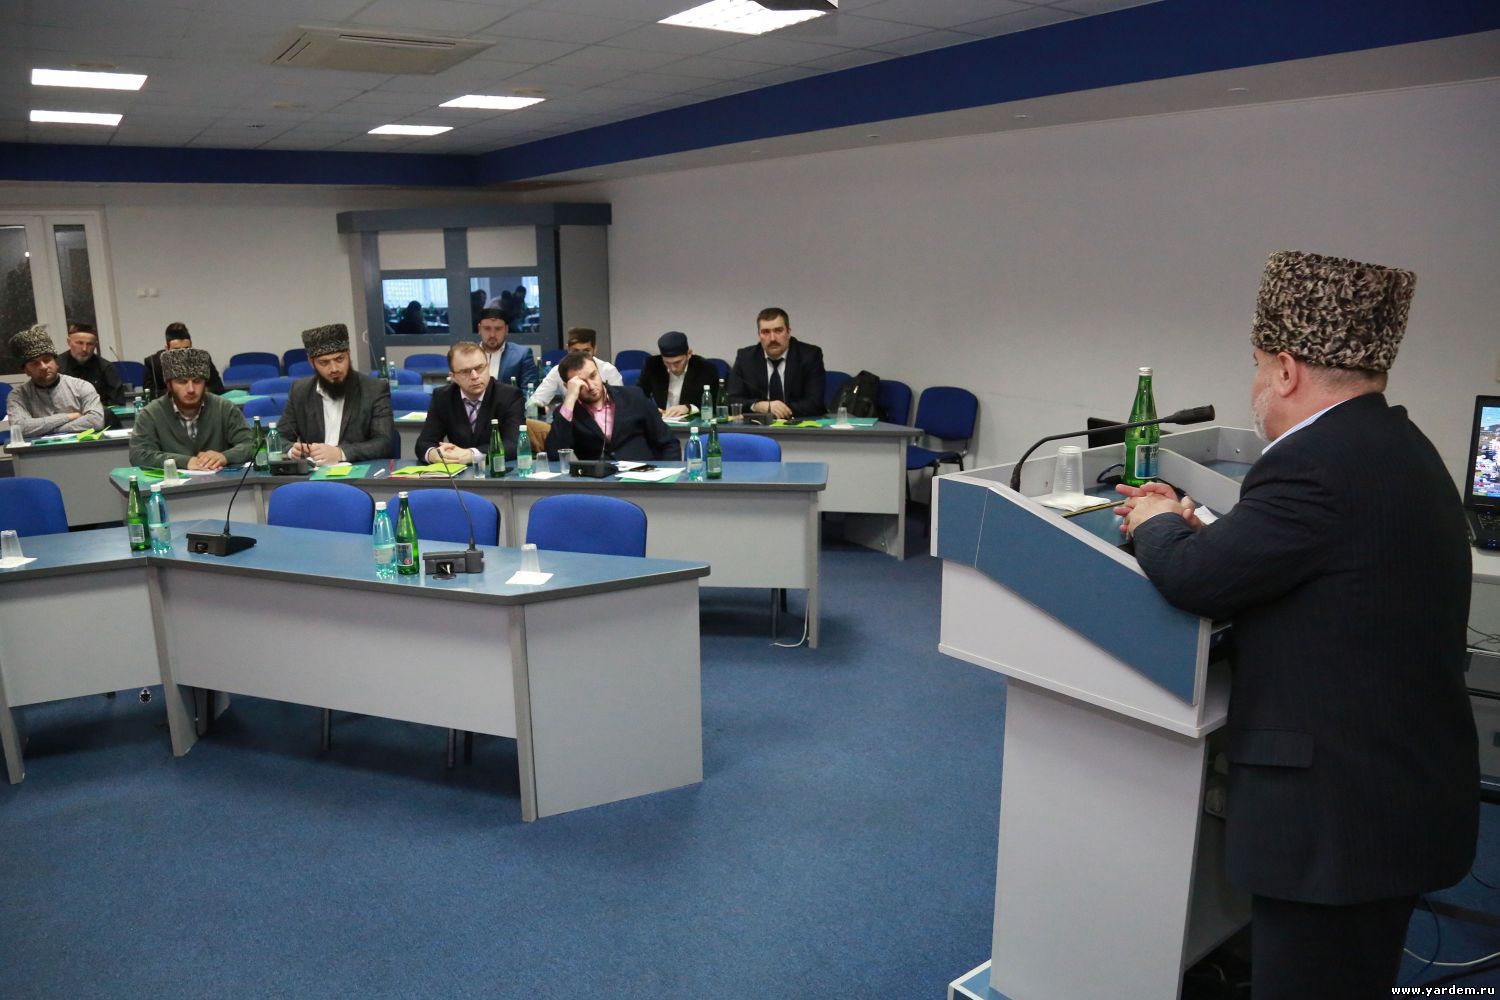 Вице-президент фонда "Ярдэм" принял участие в работе курсов в Пятигорске. Общие новости